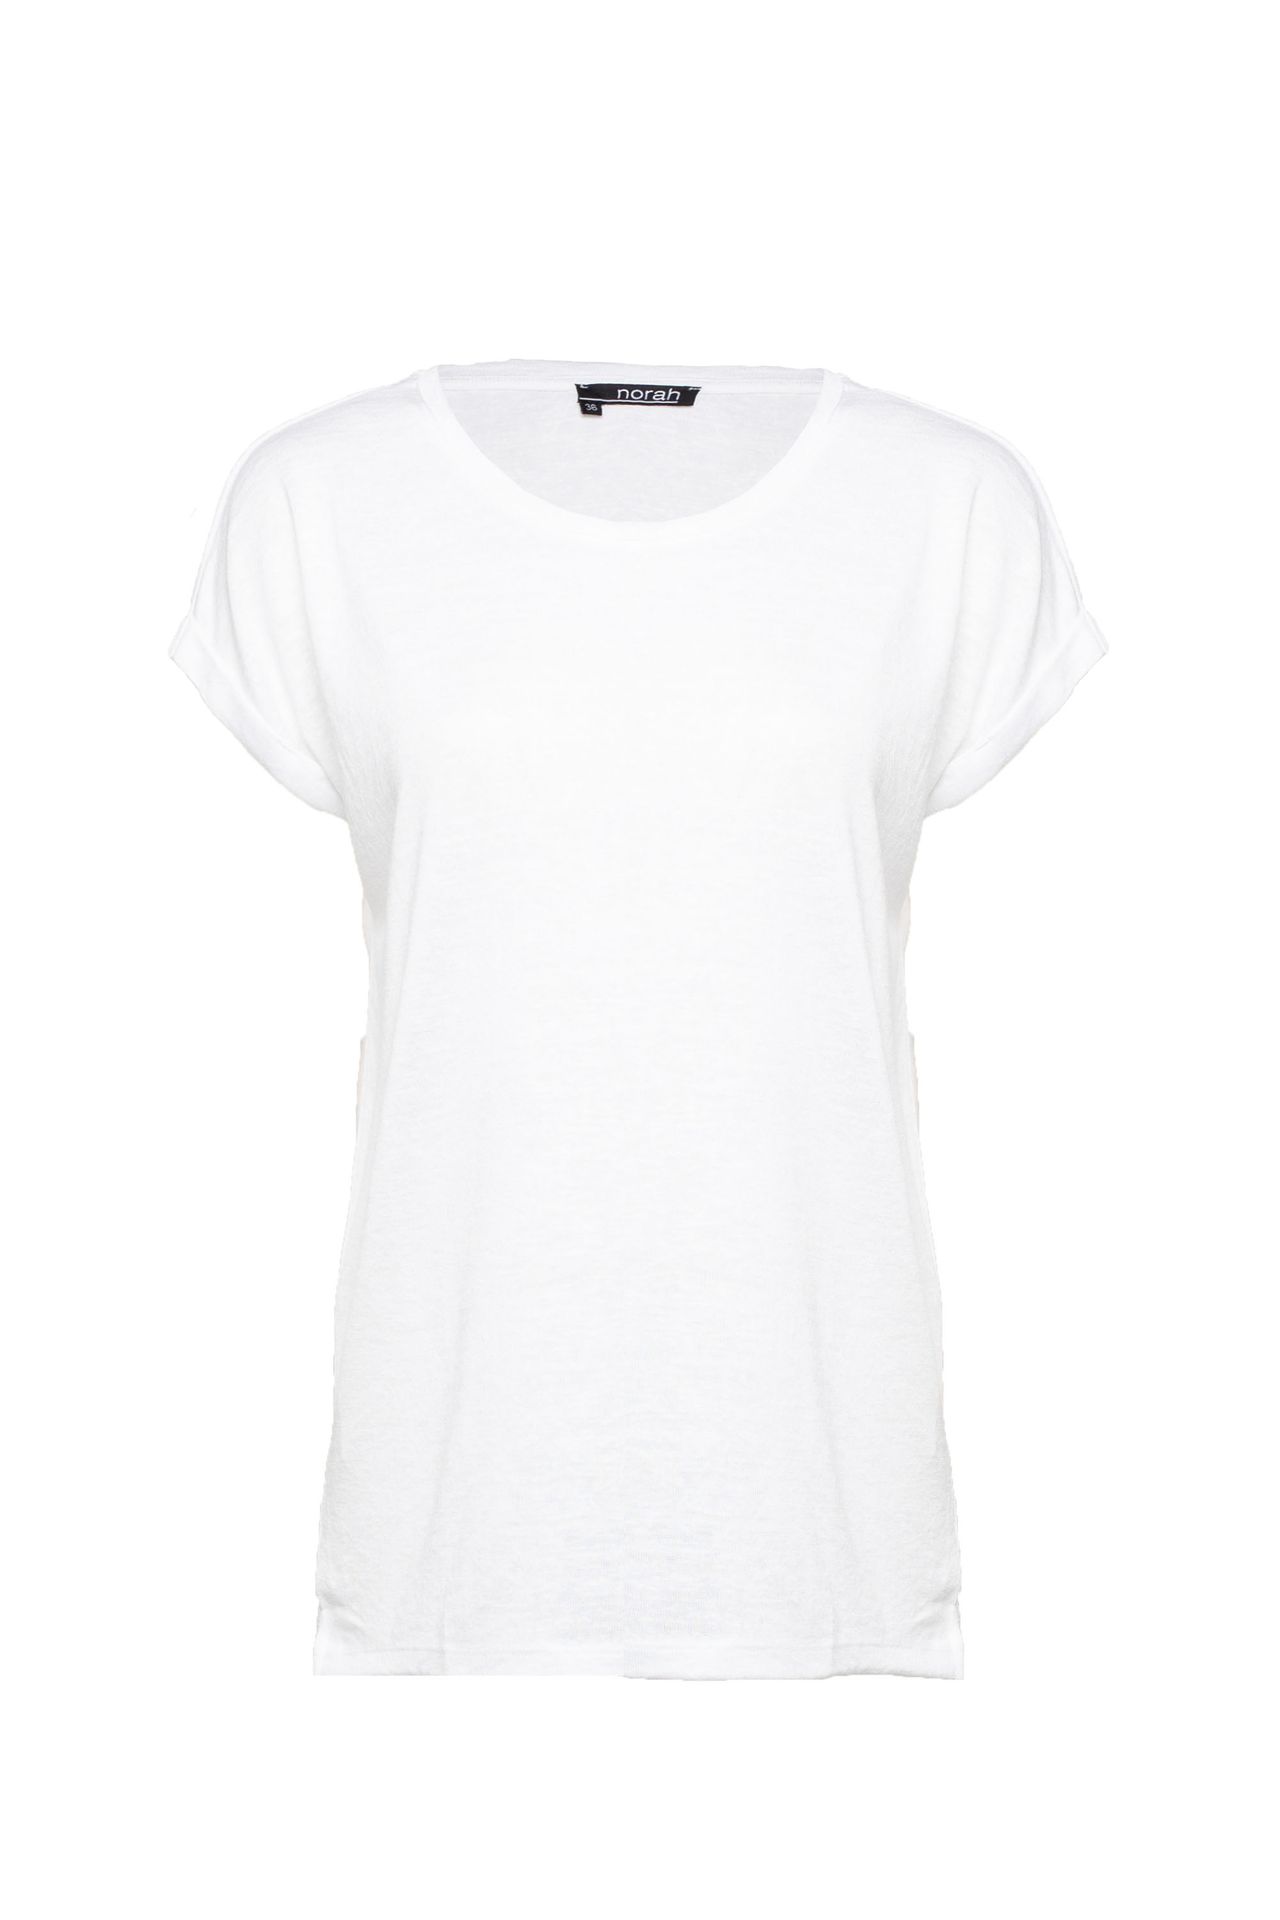 Norah Shirt wit white 211185-100